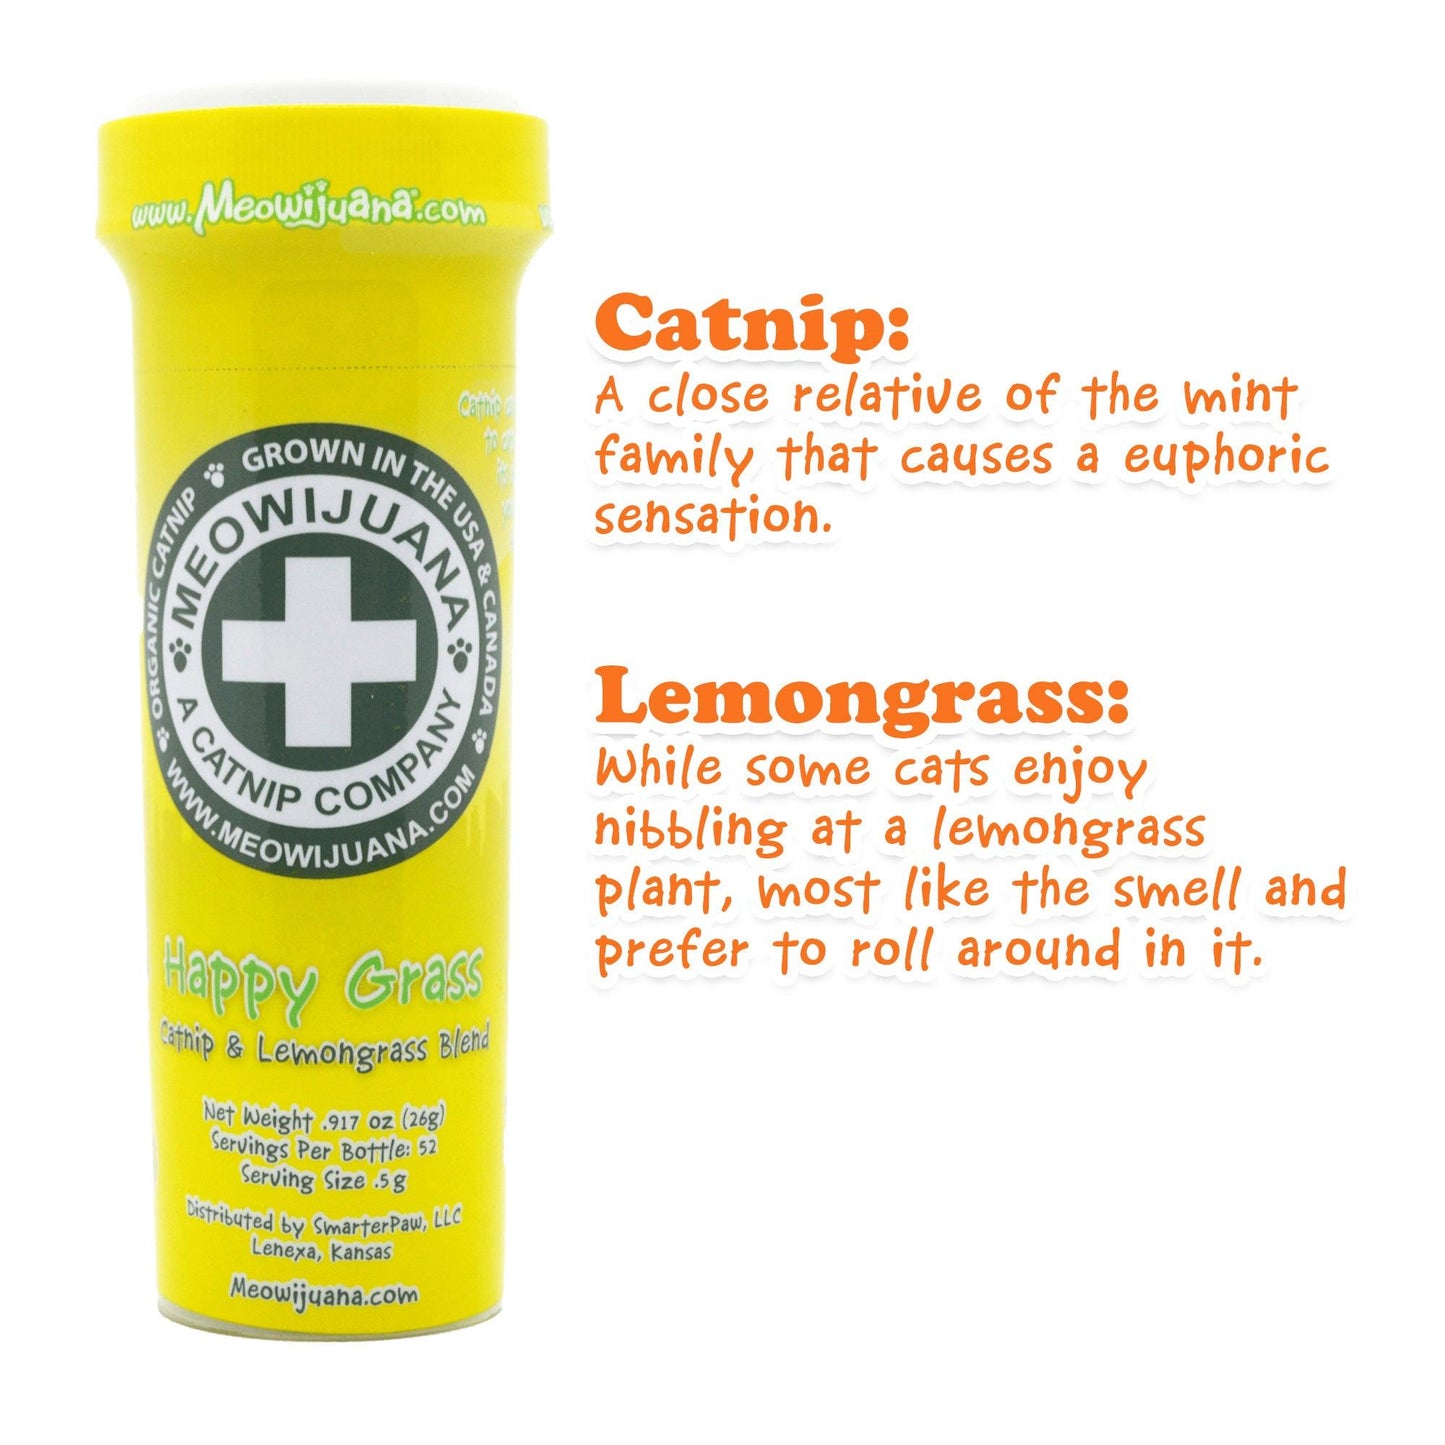 Happy Grass - Catnip & Lemongrass Blend